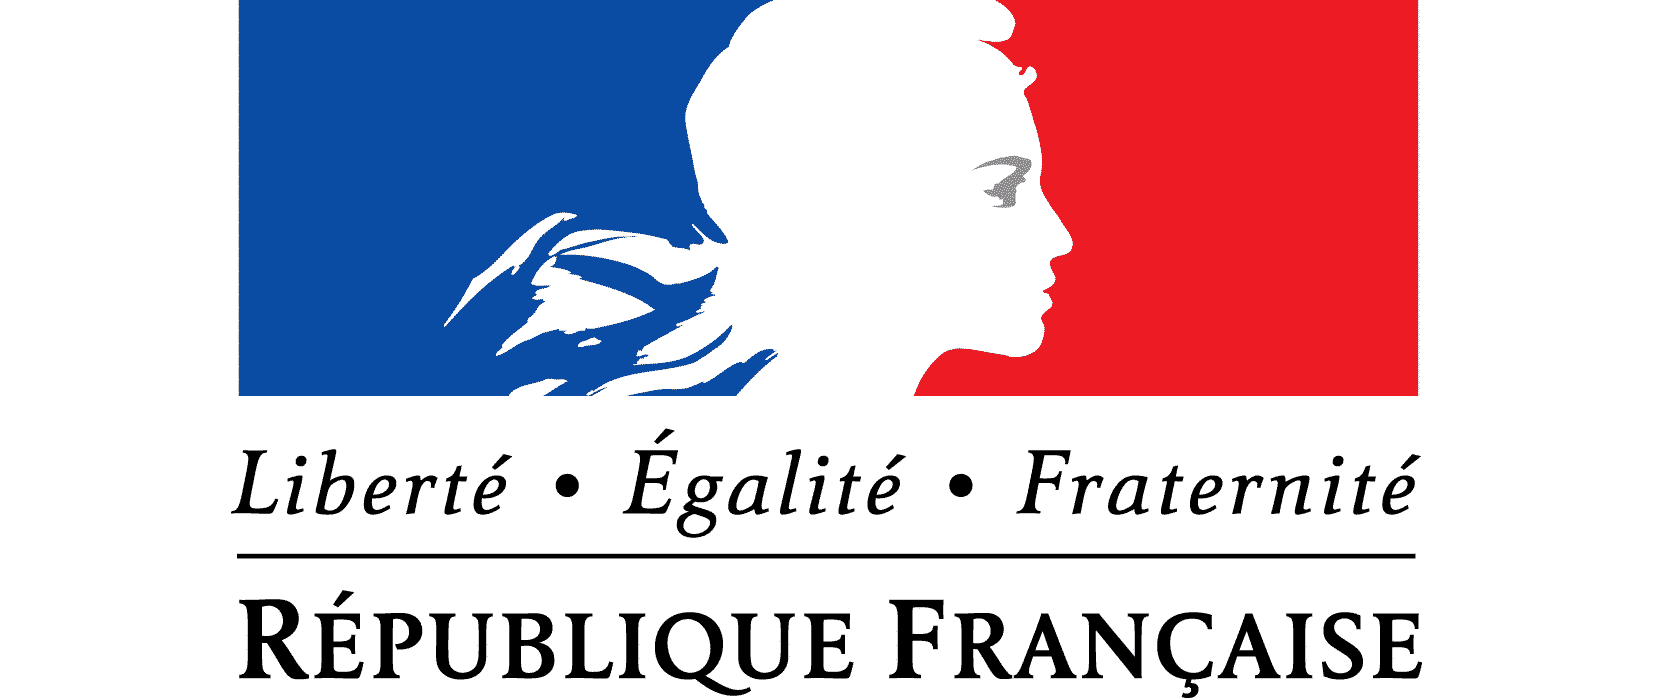 Французские девизы